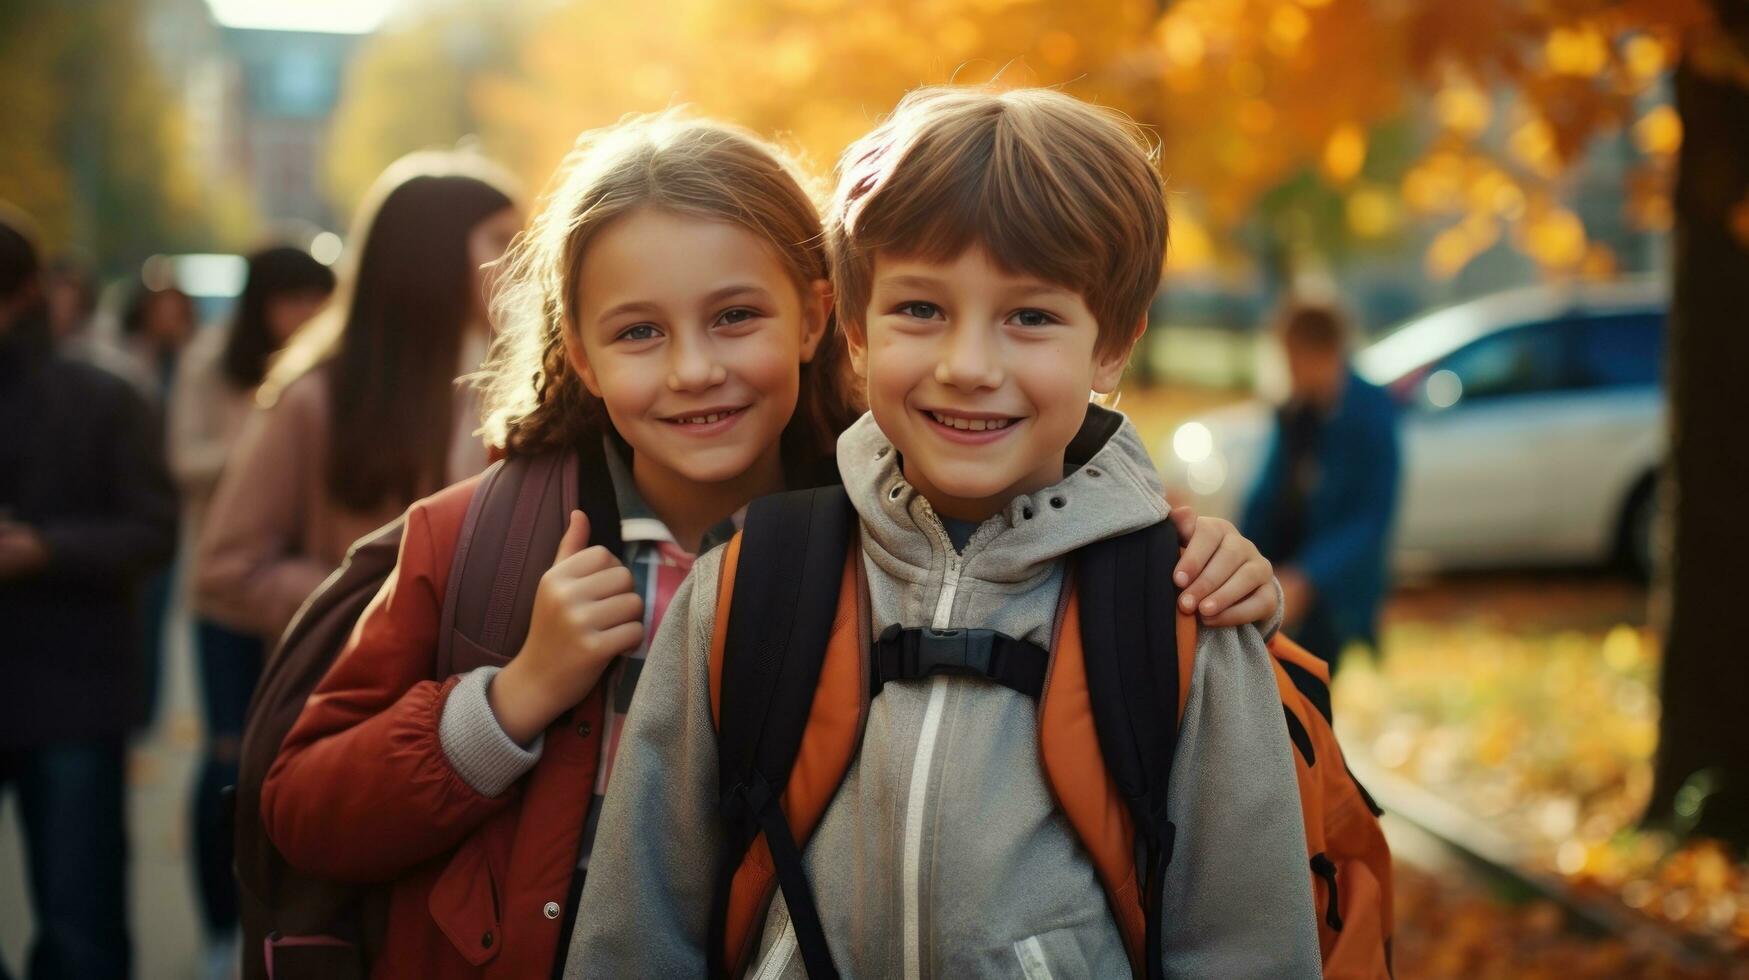 glückliche Kinder gehen zur Schule foto